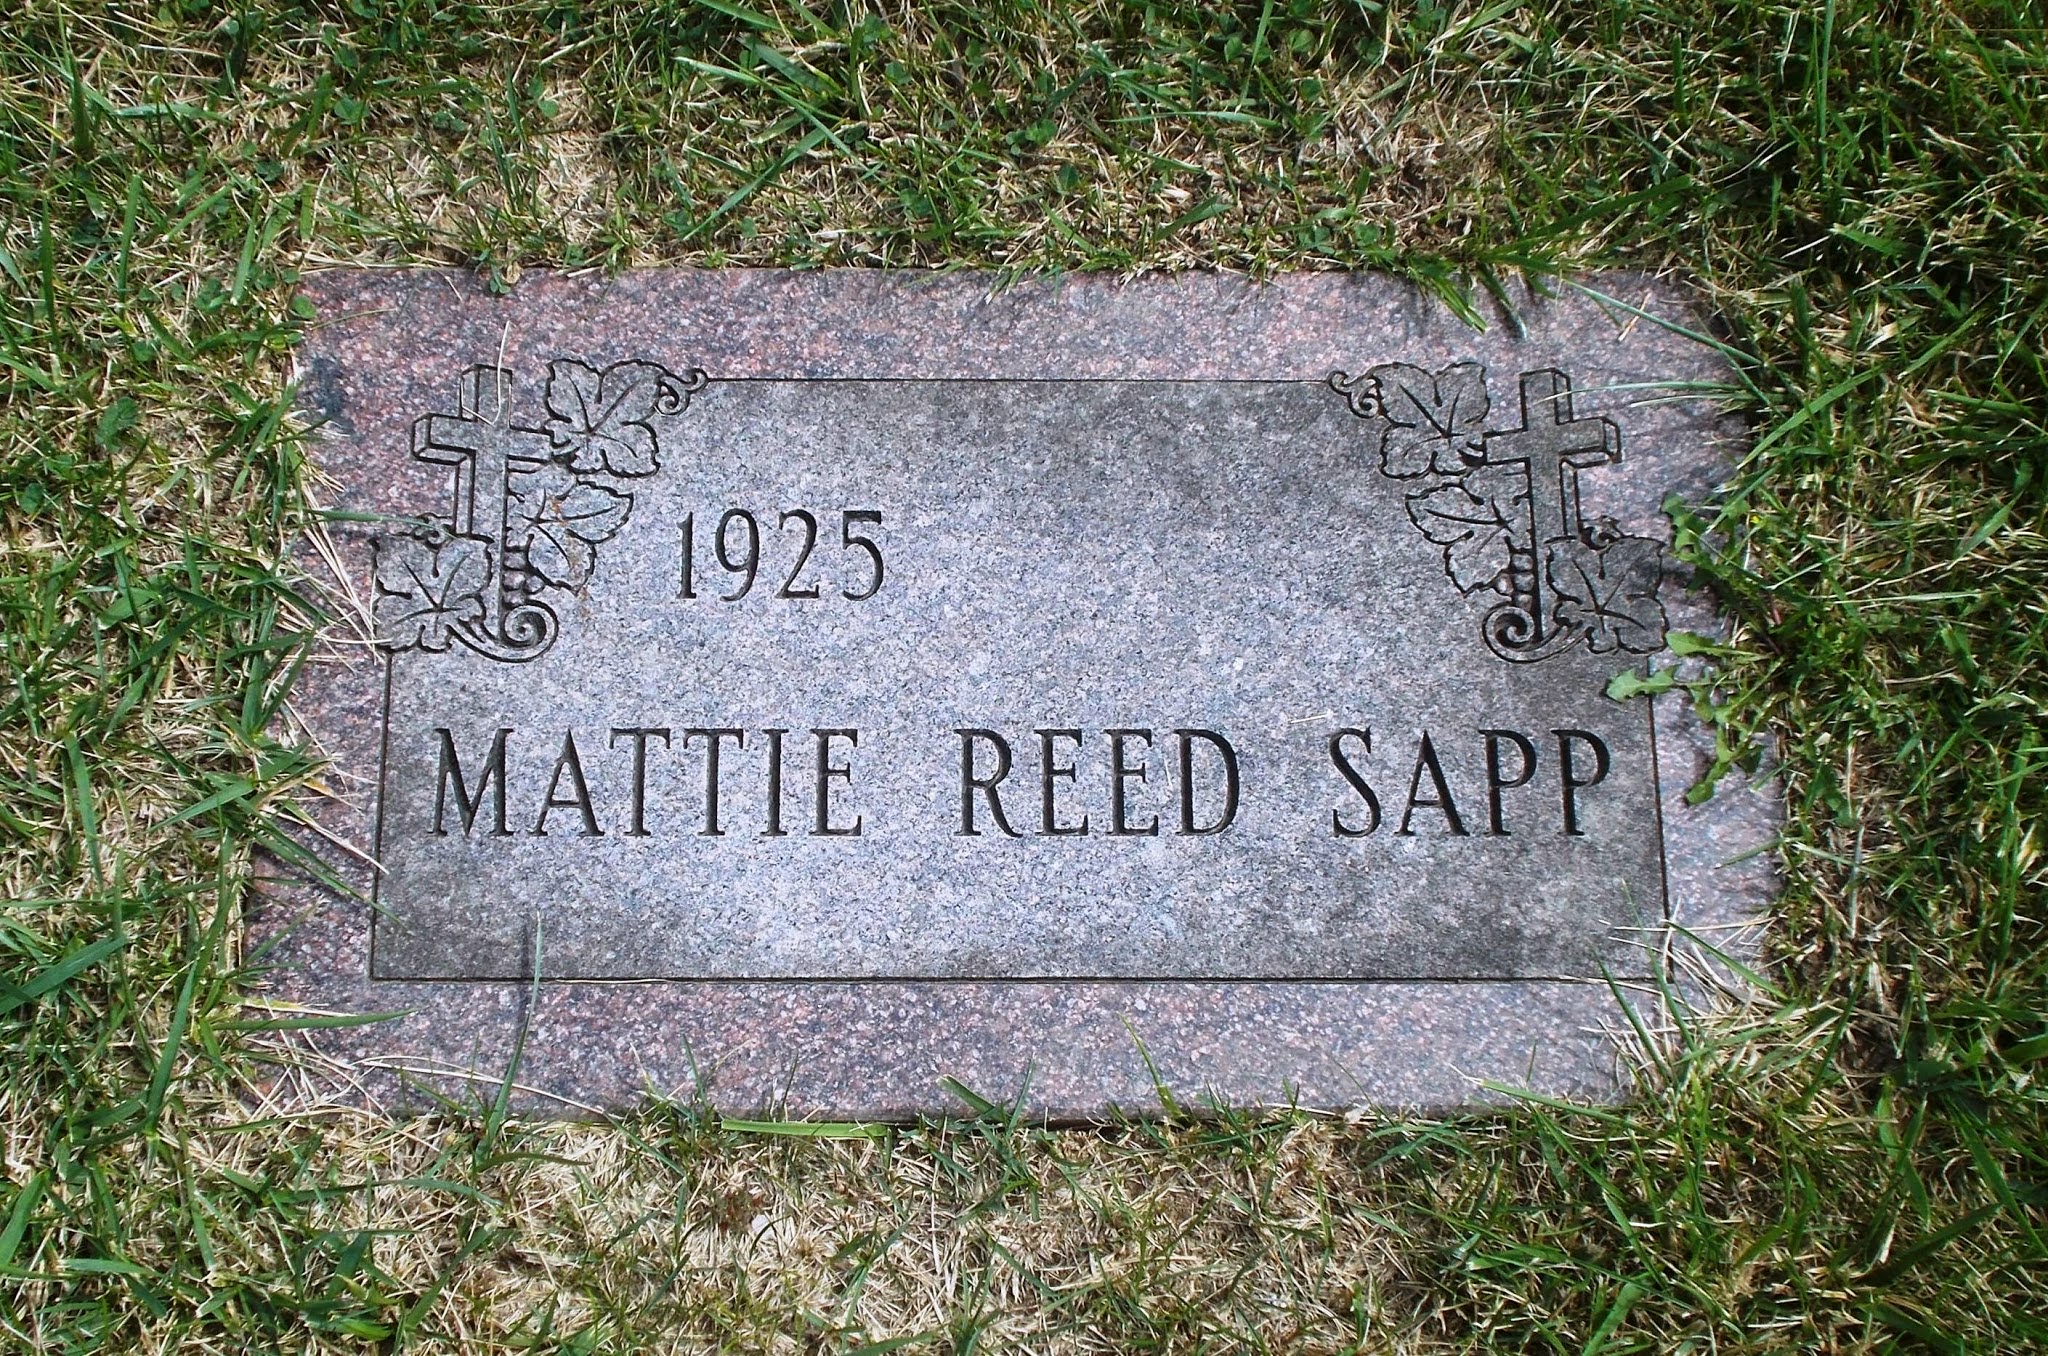 Mattie Reed Sapp